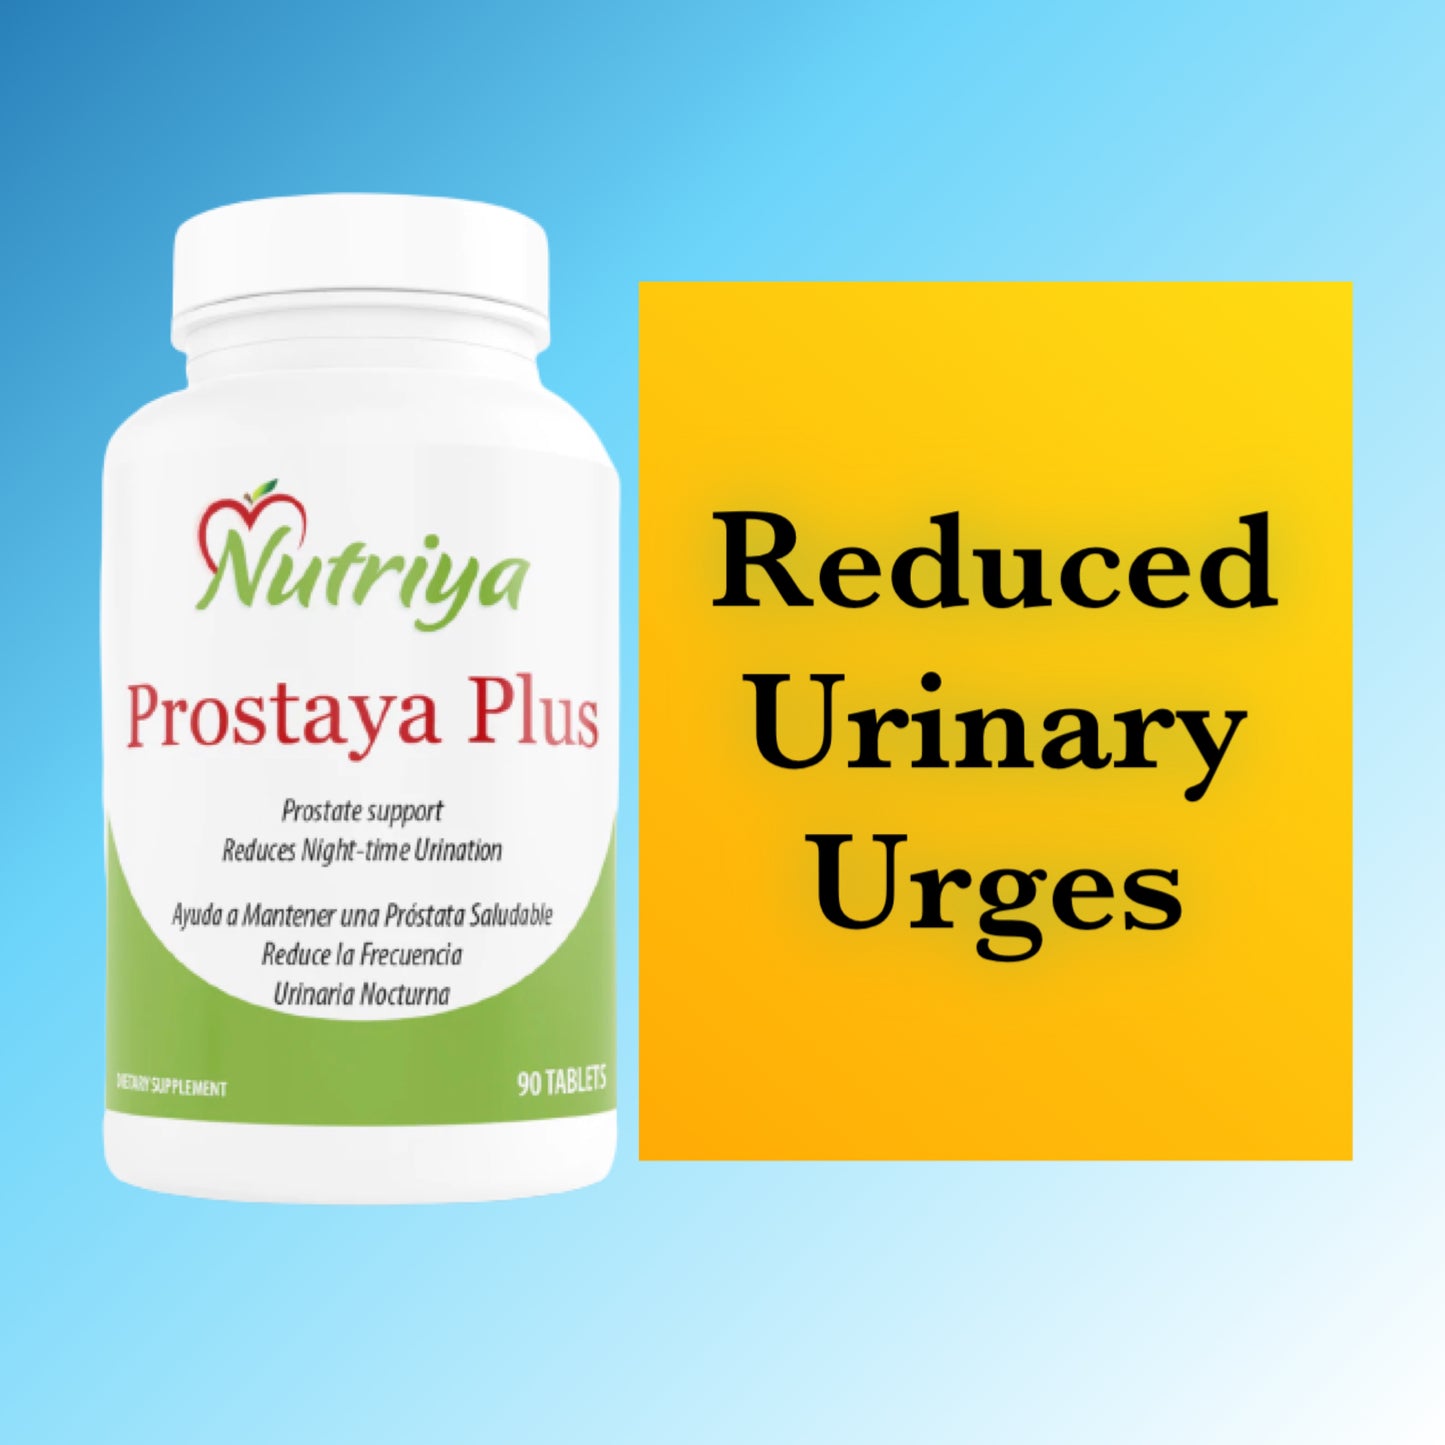 Prostaya Plus - Nutriya Prostaya Plus - Prostate & Bladder Support